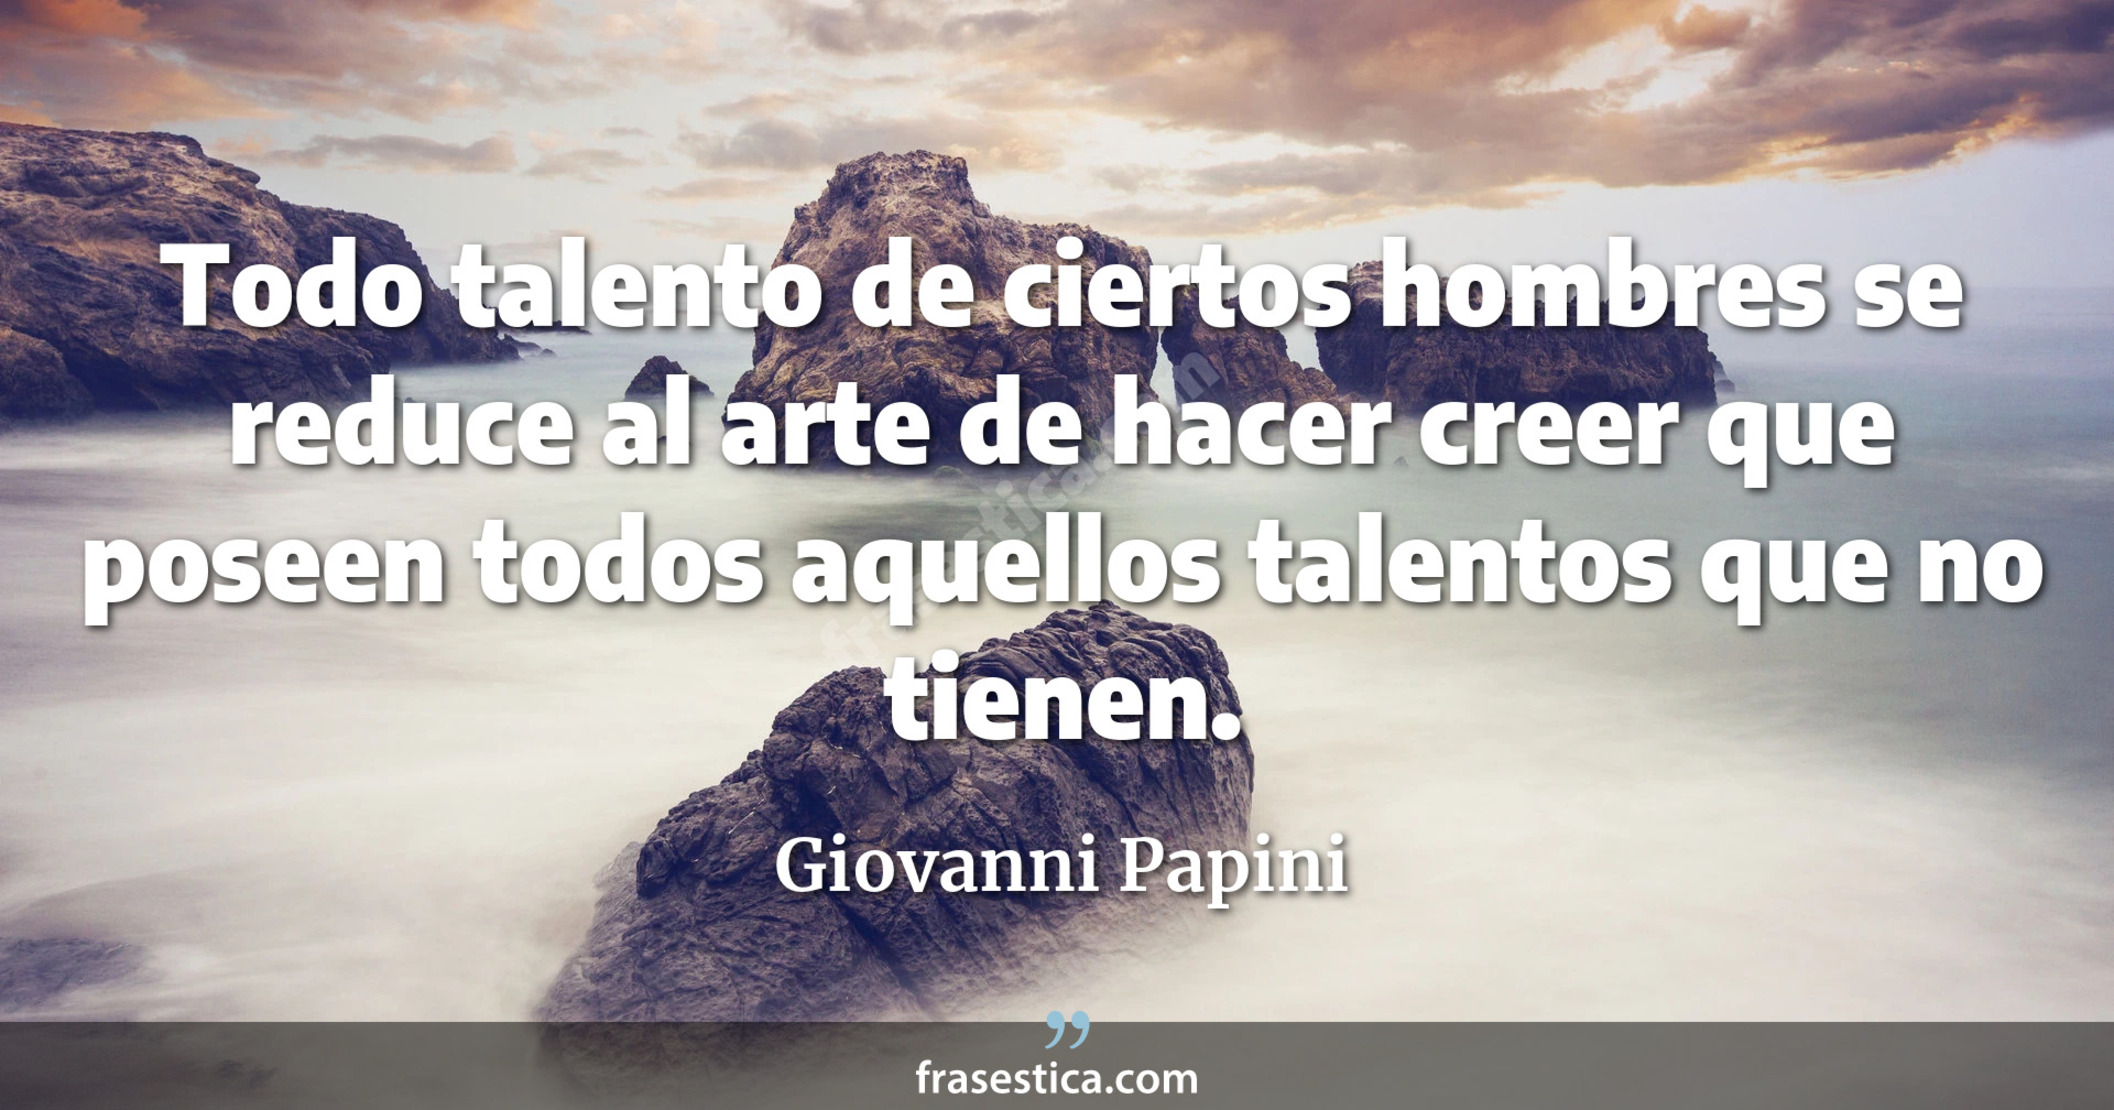 Todo talento de ciertos hombres se reduce al arte de hacer creer que poseen todos aquellos talentos que no tienen. - Giovanni Papini